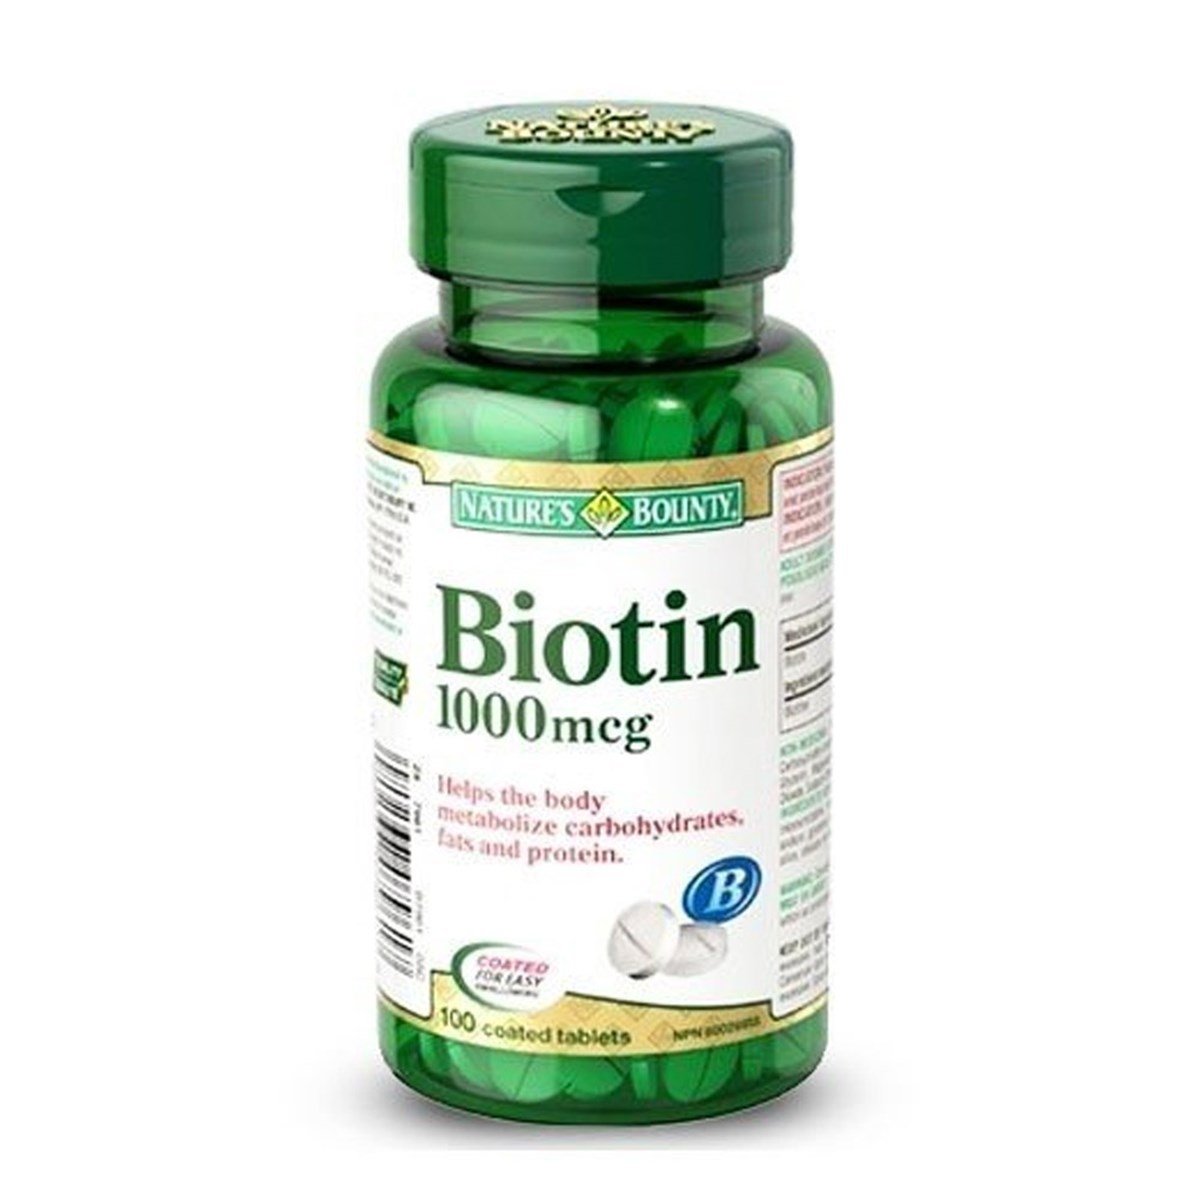 Nature's Bounty Biotin 1000 mg 100 Tablet | Fiyatı 53,90 TL | Vitamin Dolabı